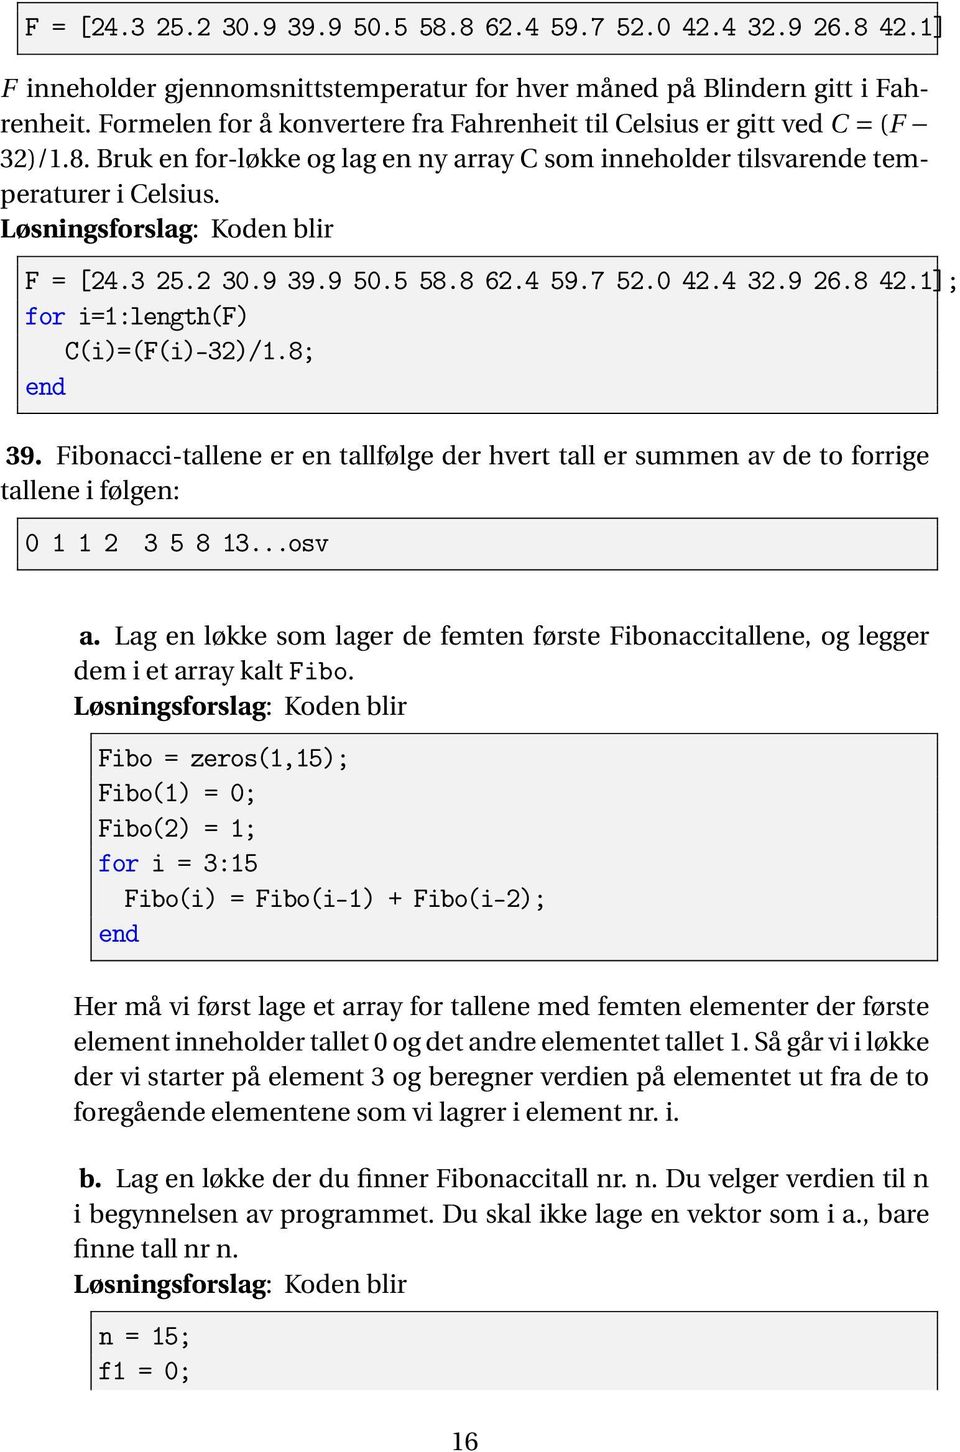 5 58.8 62.4 59.7 52.0 42.4 32.9 26.8 42.1]; for i=1:length(f) C(i)=(F(i)-32)/1.8; 39. Fibonacci-tallene er en tallfølge der hvert tall er summen av de to forrige tallene i følgen: 0 1 1 2 3 5 8 13.